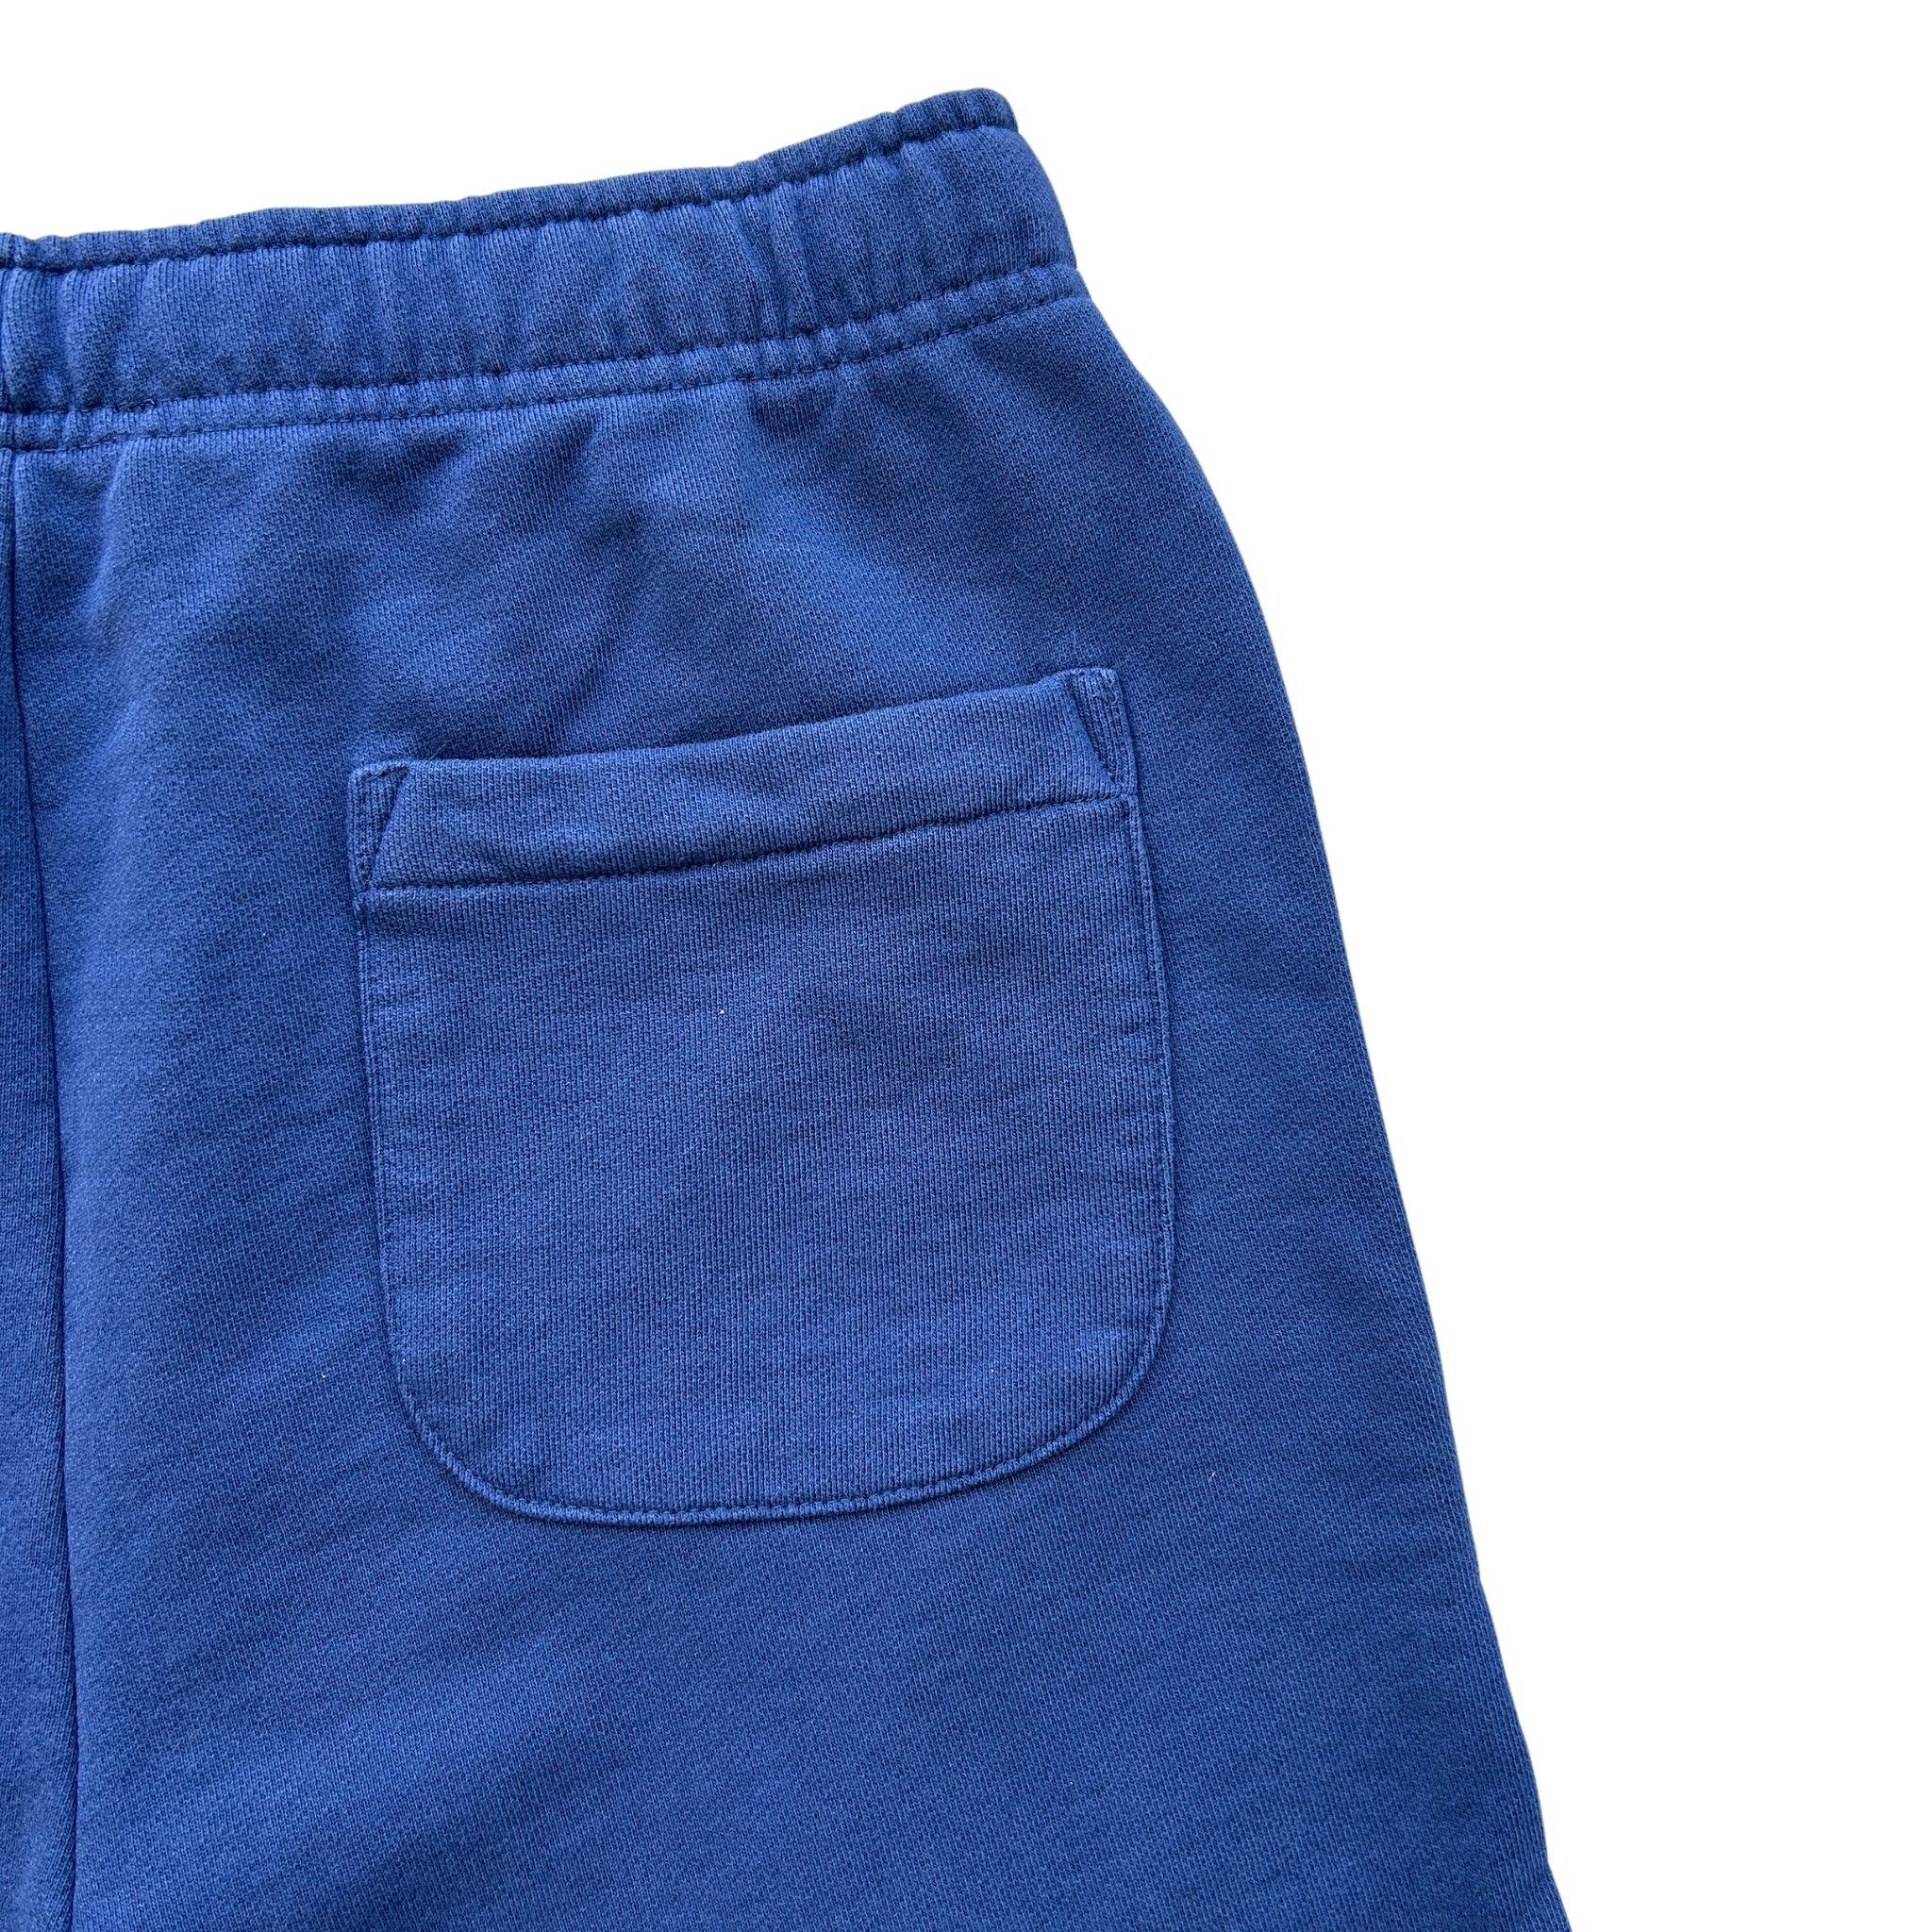 Polo Ralph Lauren Polo Shorts (Ocean Blue) - Polo Ralph Lauren